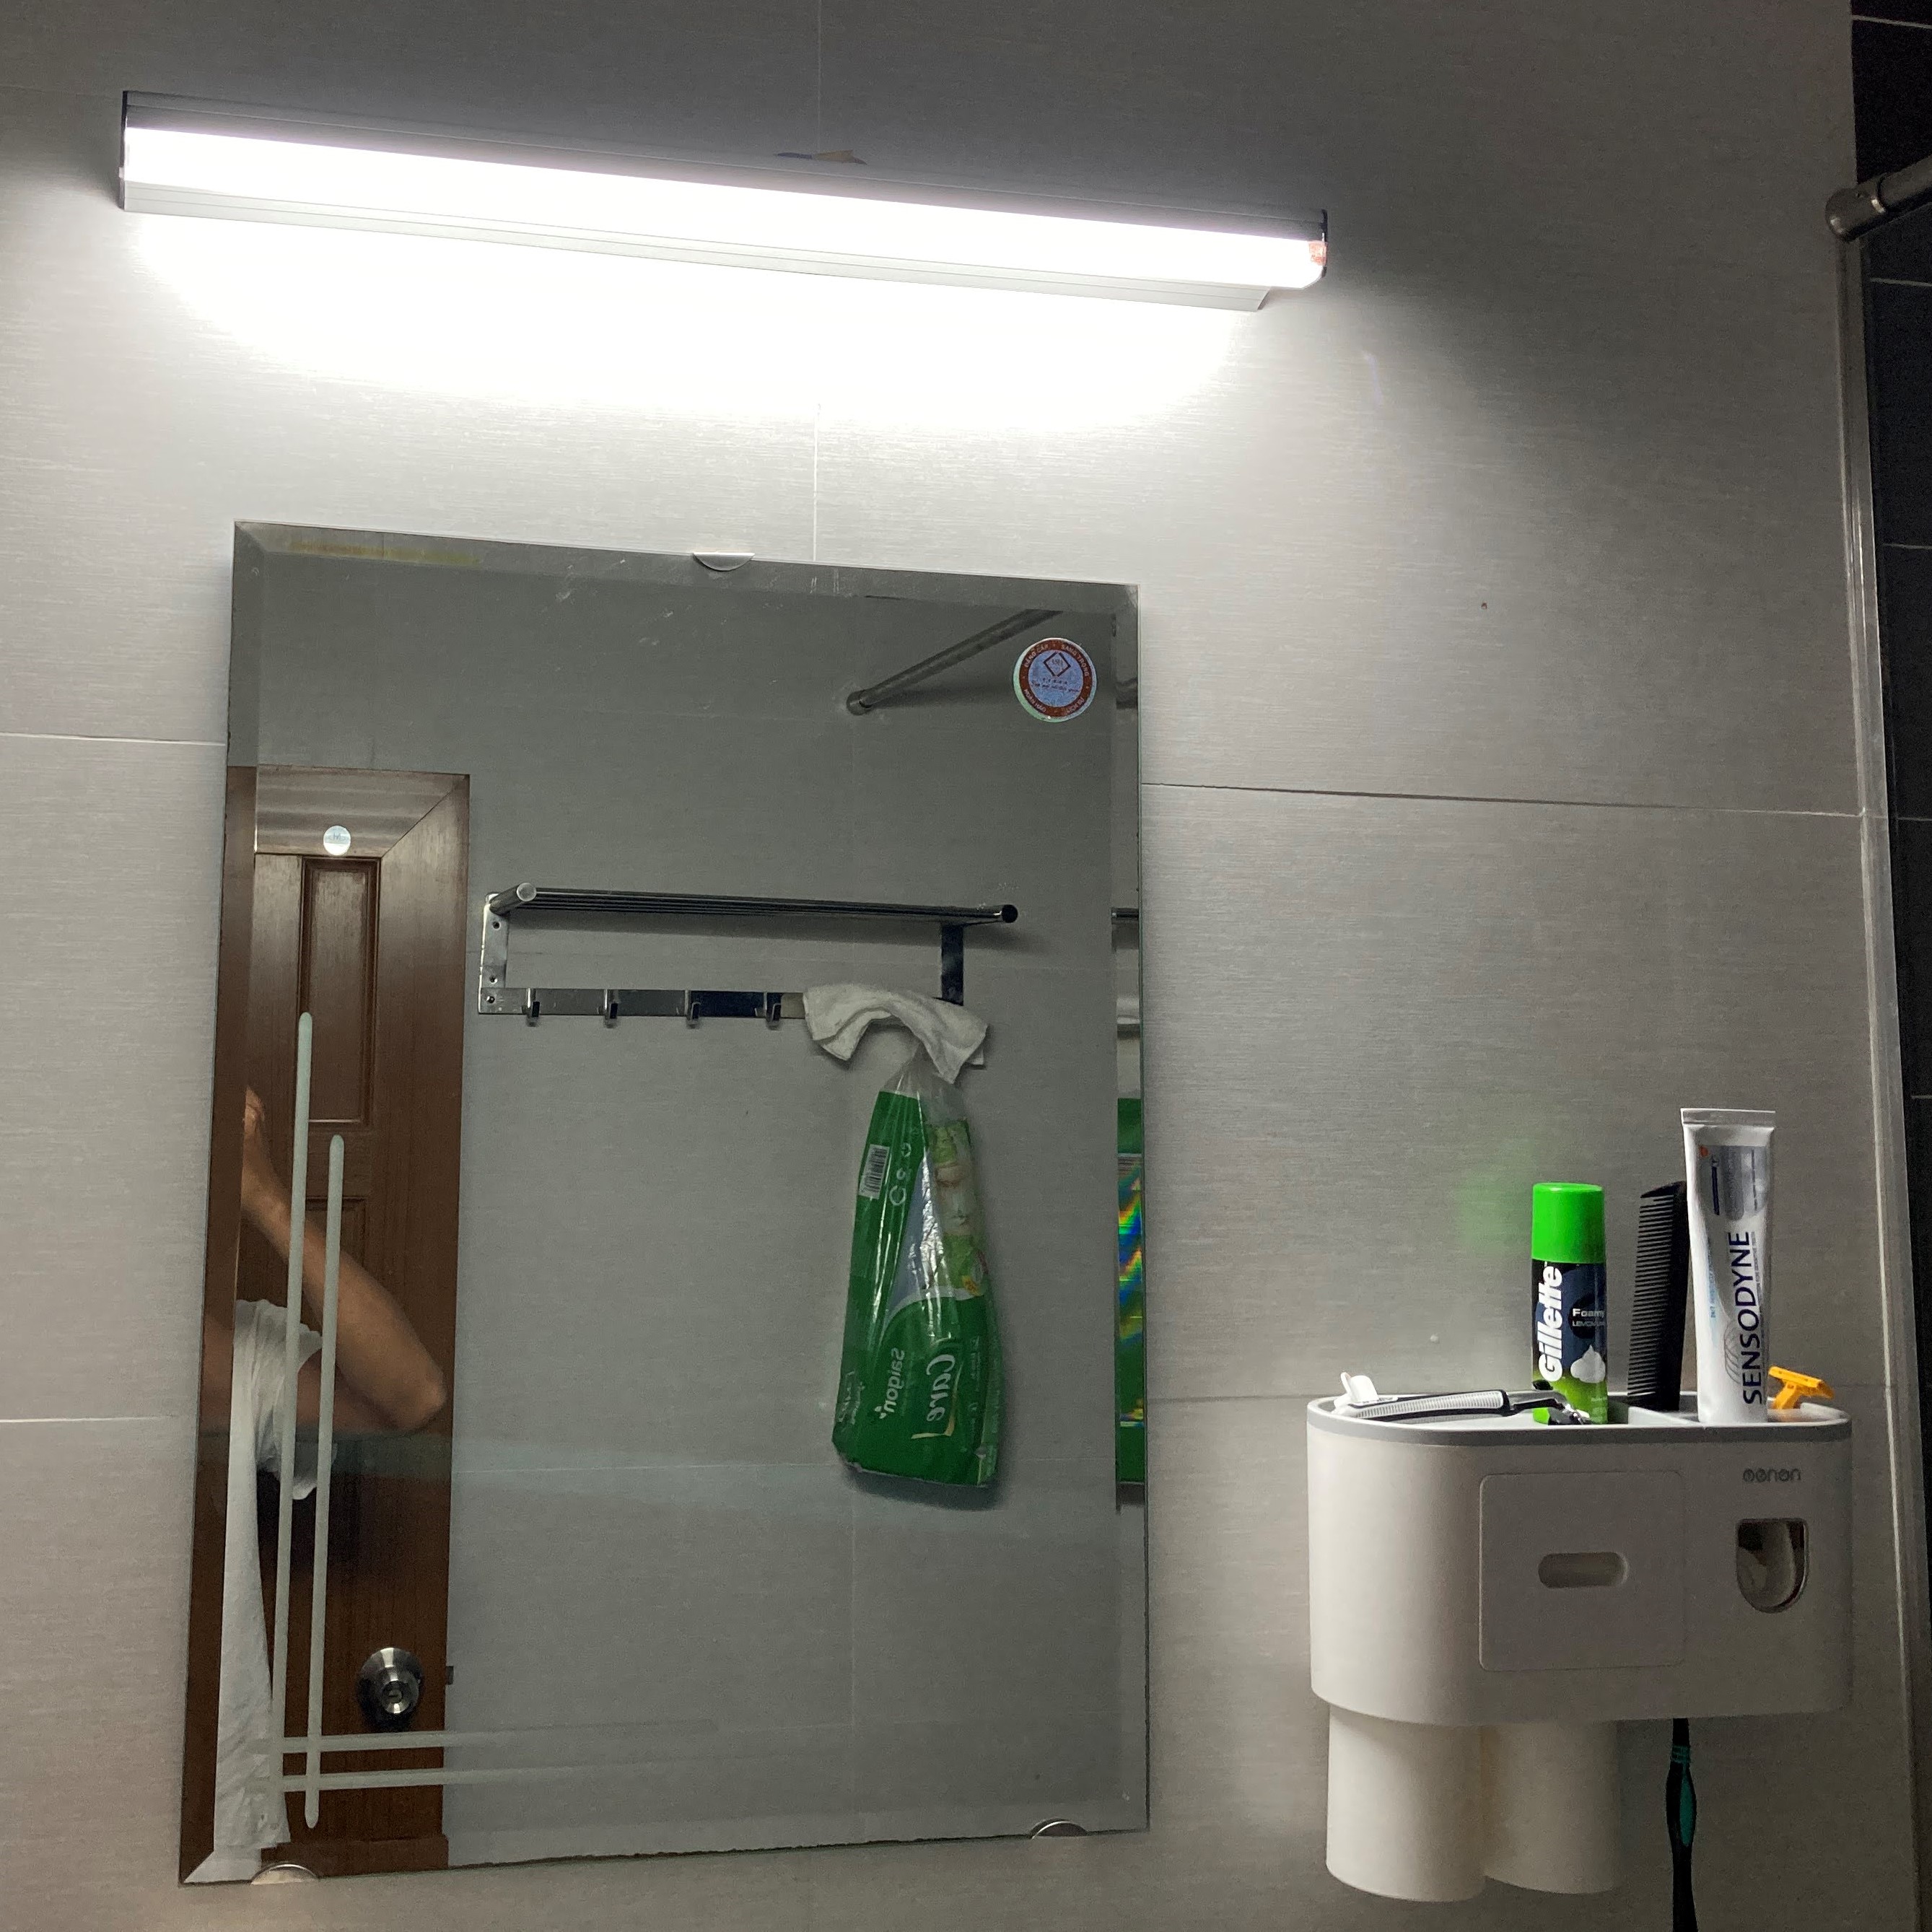 Tạo điểm nhấn vô cùng ấn tượng cho phòng tắm của bạn với đèn LED Chiếu Gương. Không chỉ mang lại ánh sáng đẹp mắt mà đèn LED còn tiết kiệm điện năng, thời gian sử dụng lâu dài và dễ dàng lắp đặt.